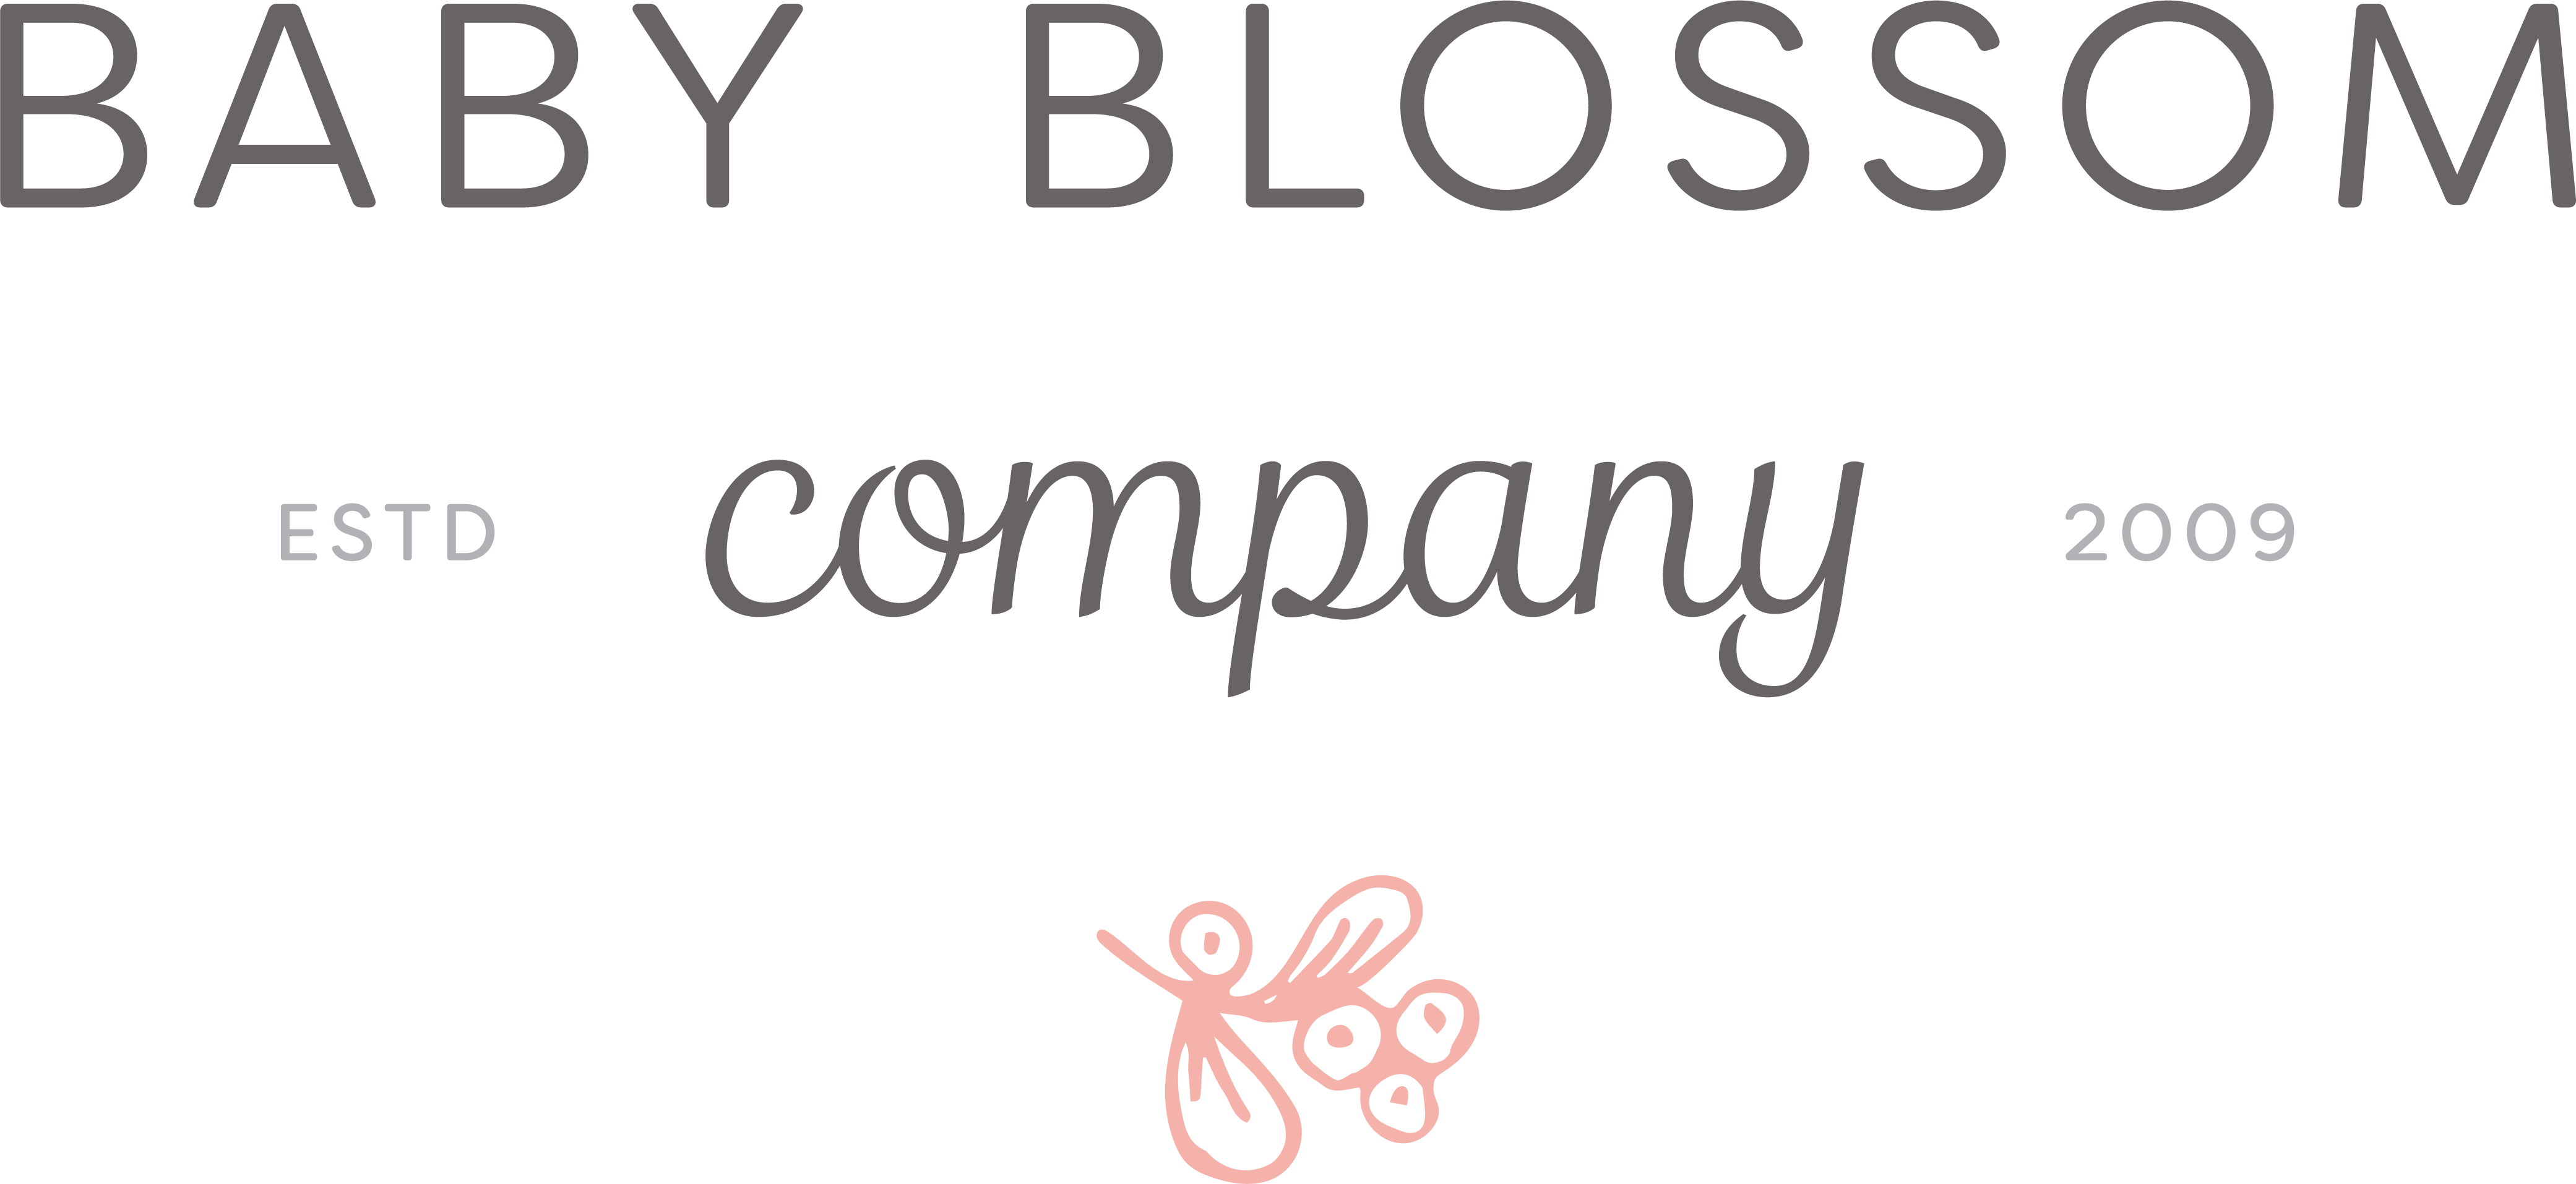 Baby Blossom Company